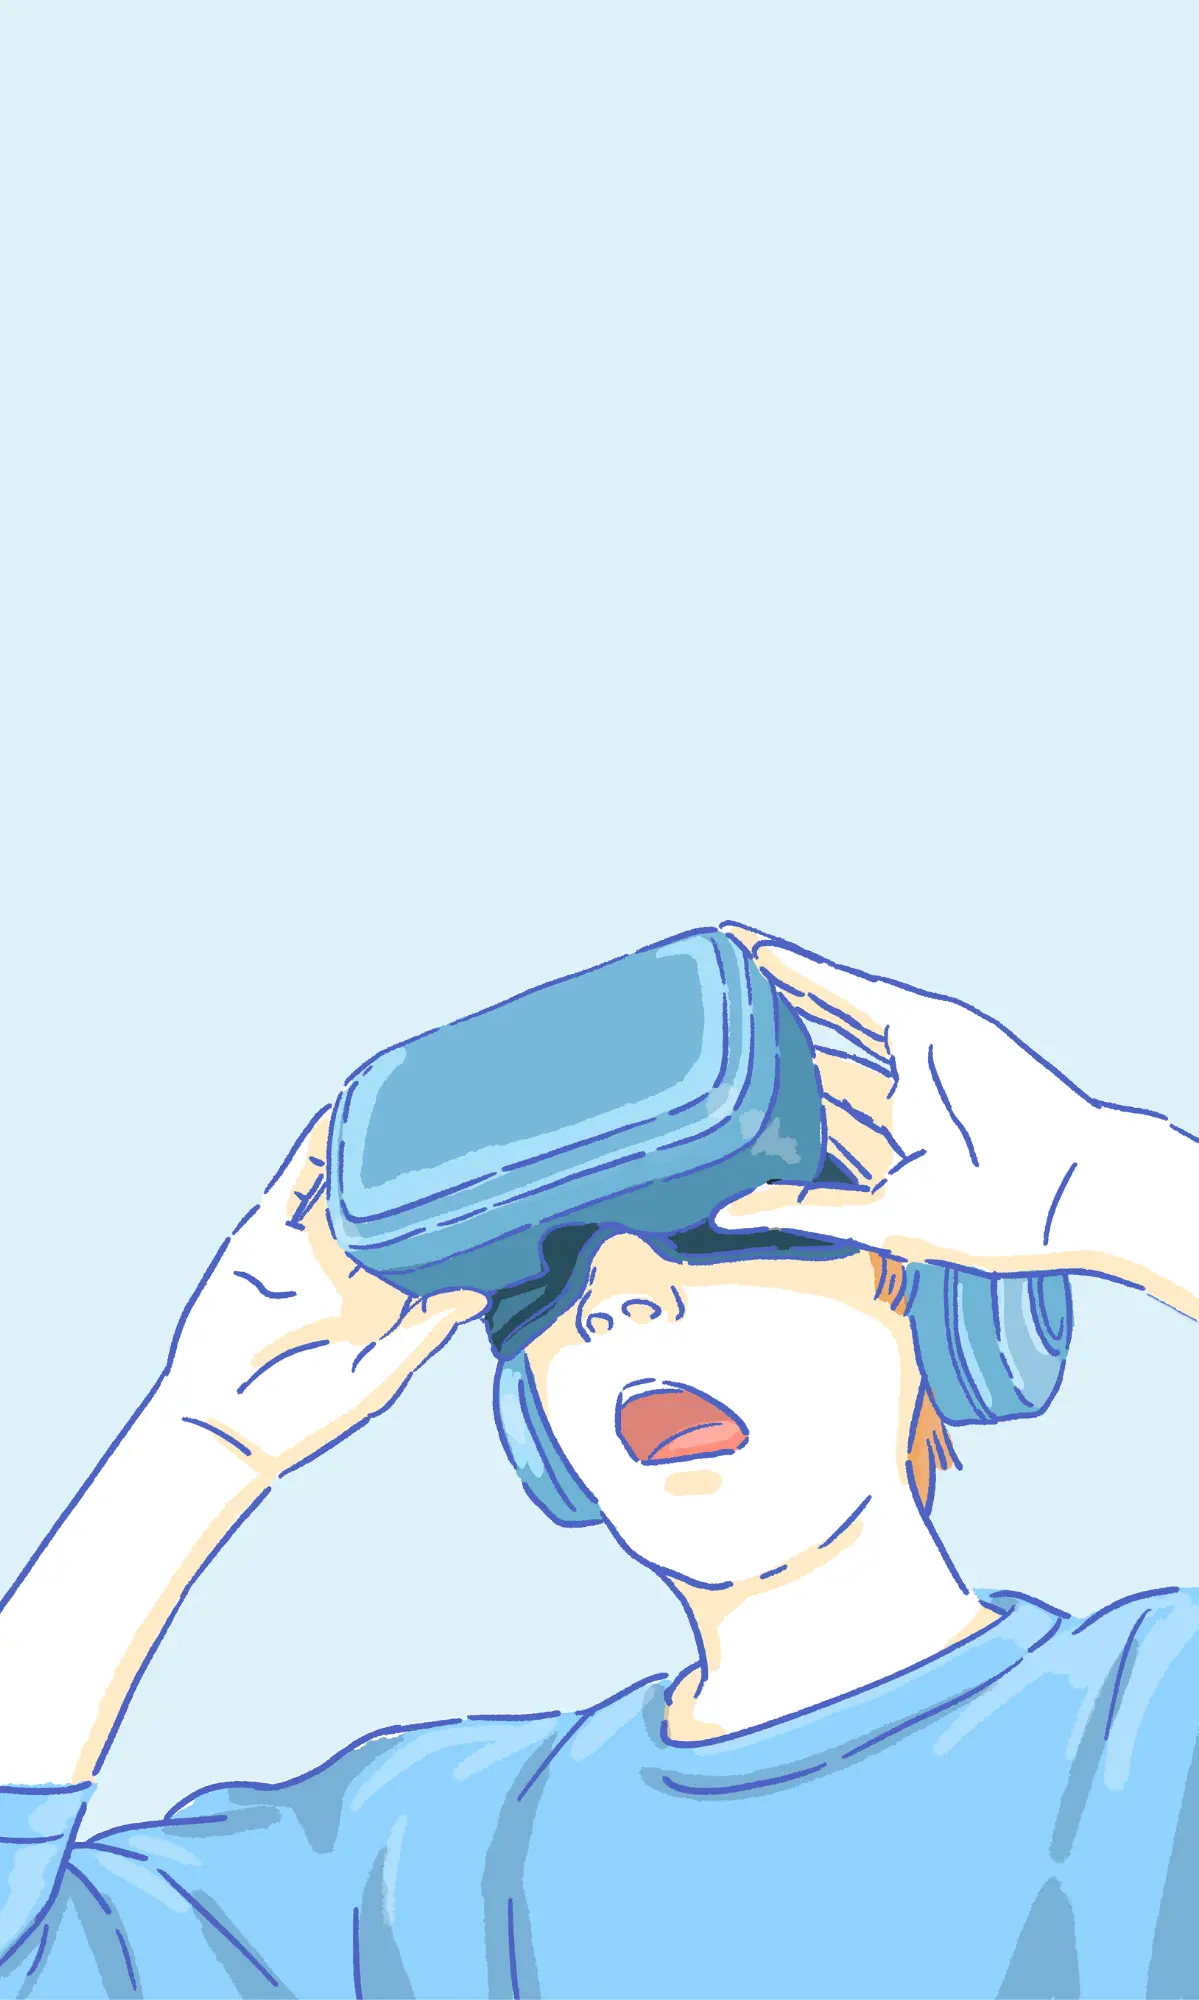 VR 여행